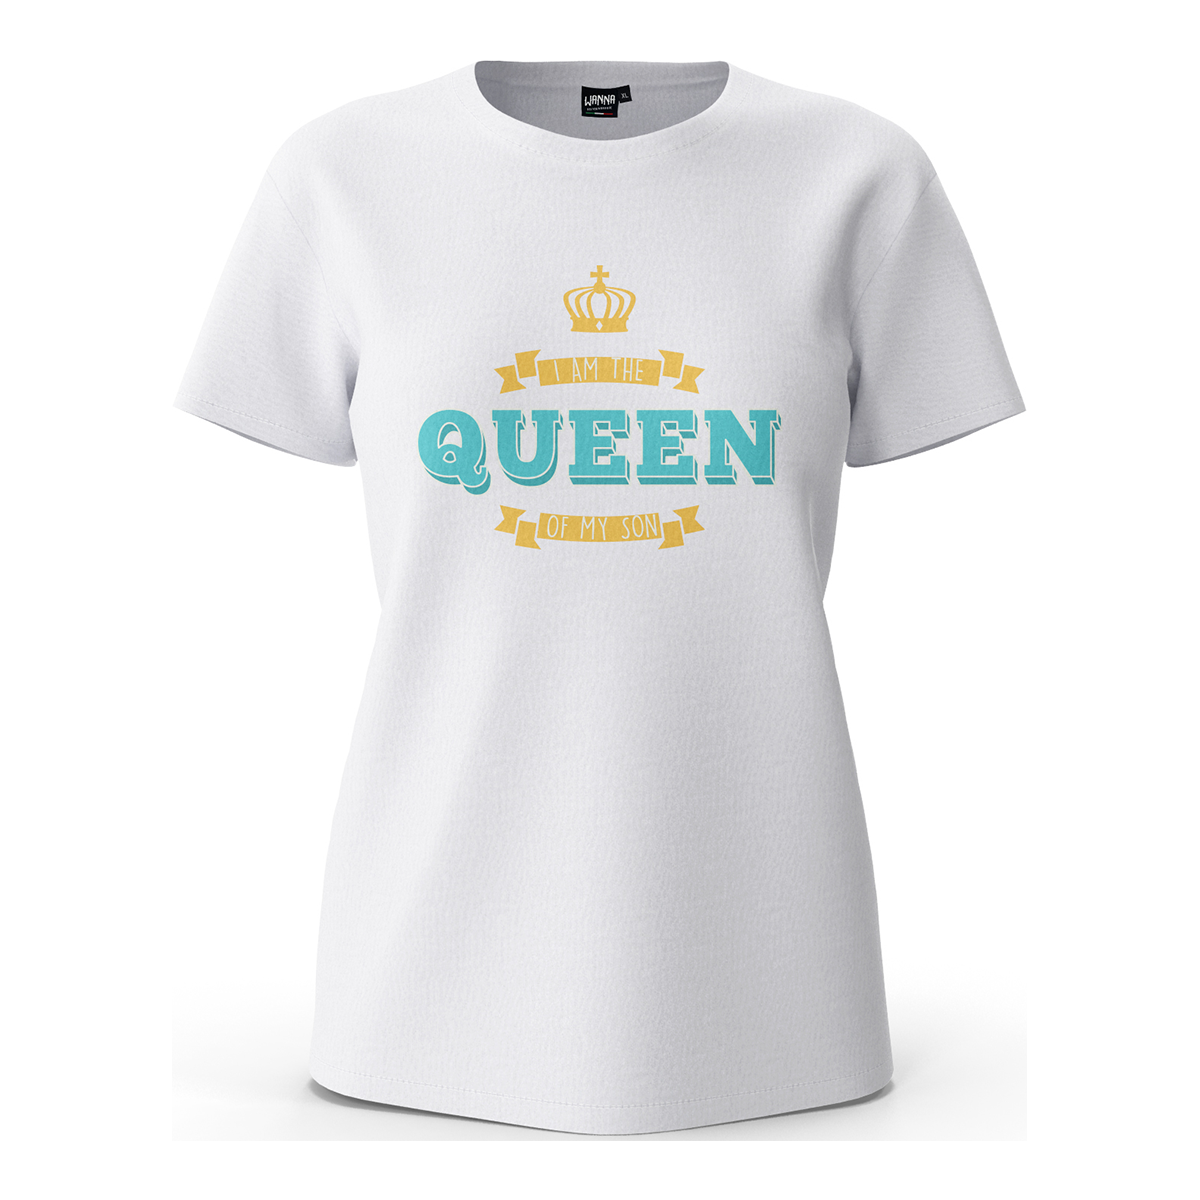 Queen - T-Shirt Donna